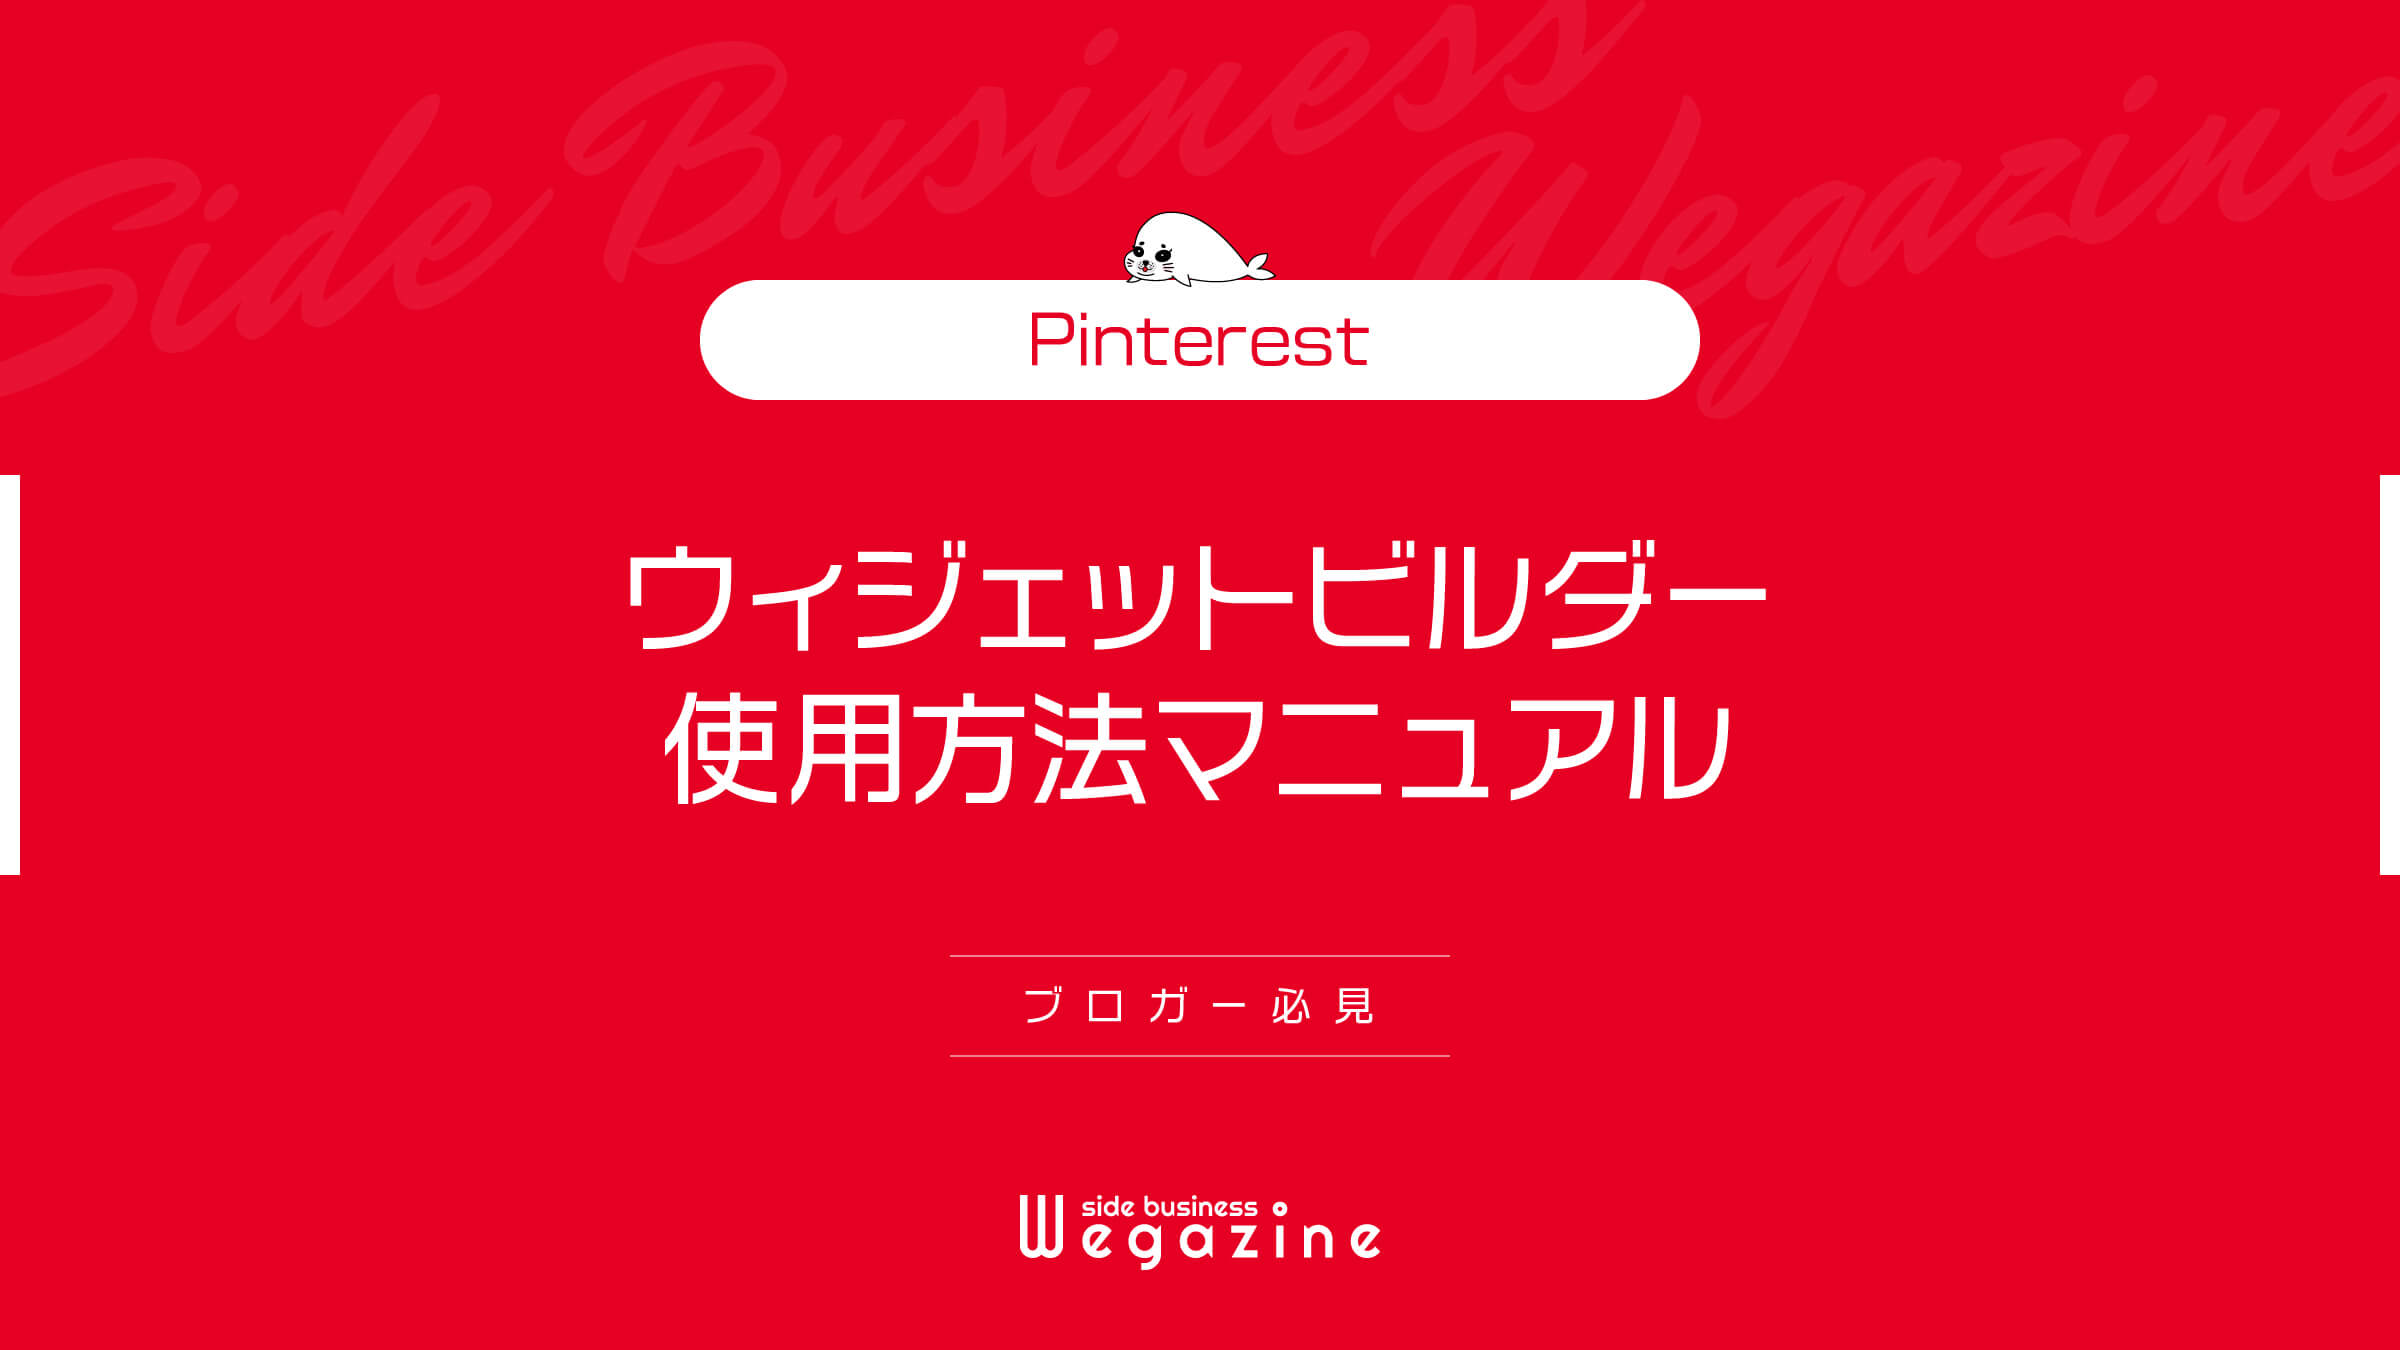 【Pinterest】ウィジェットビルダー使用方法マニュアル(ブロガー必見)